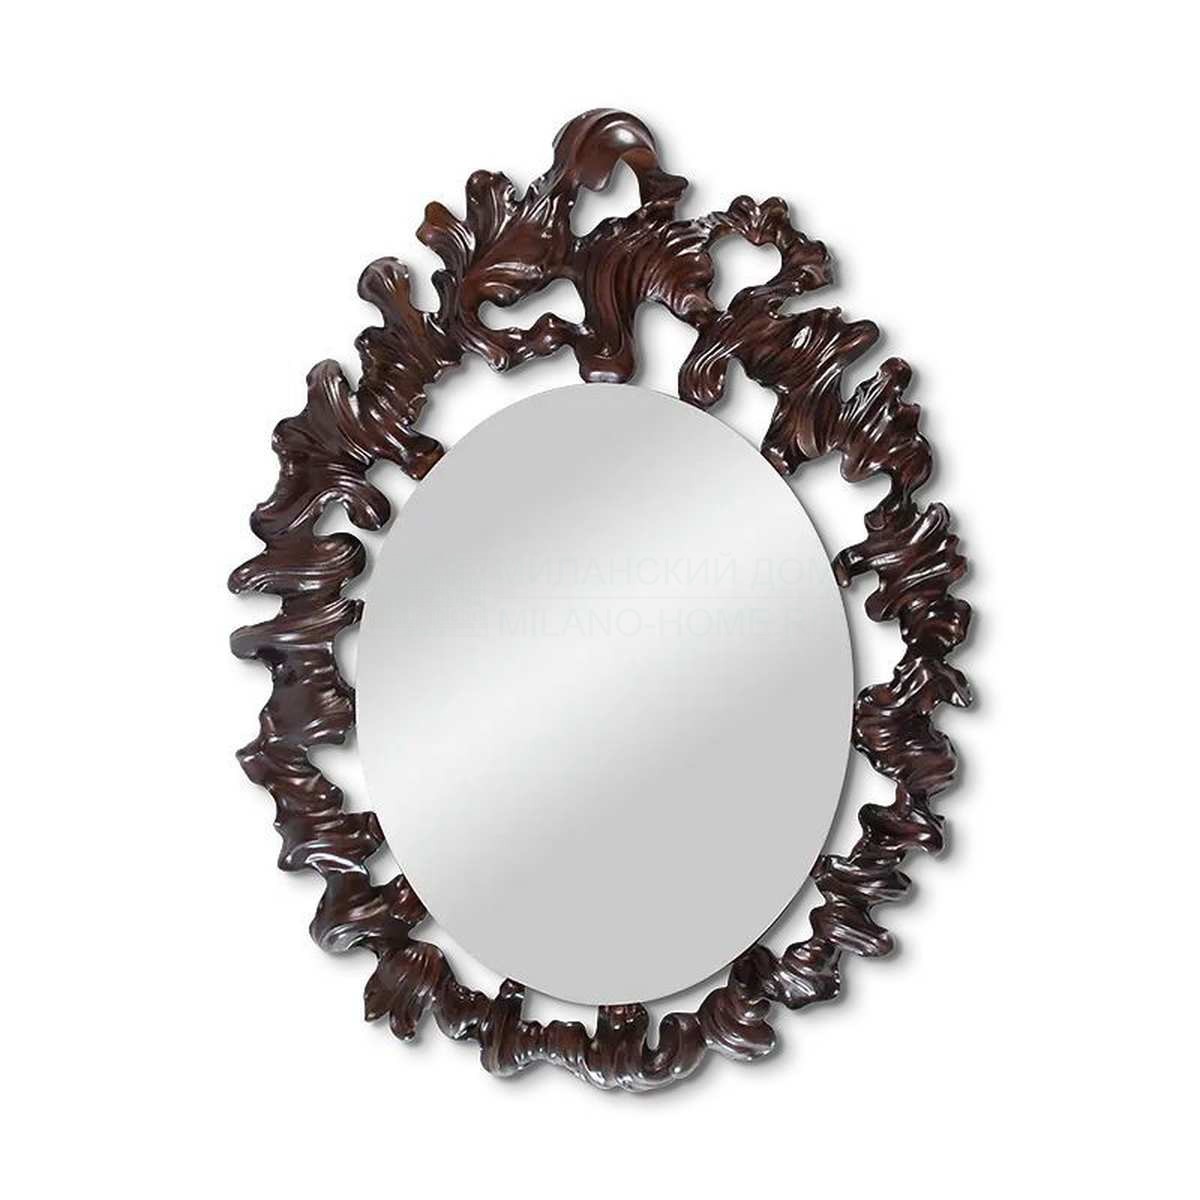 Зеркало настенное Ashton mirror из США фабрики CHRISTOPHER GUY